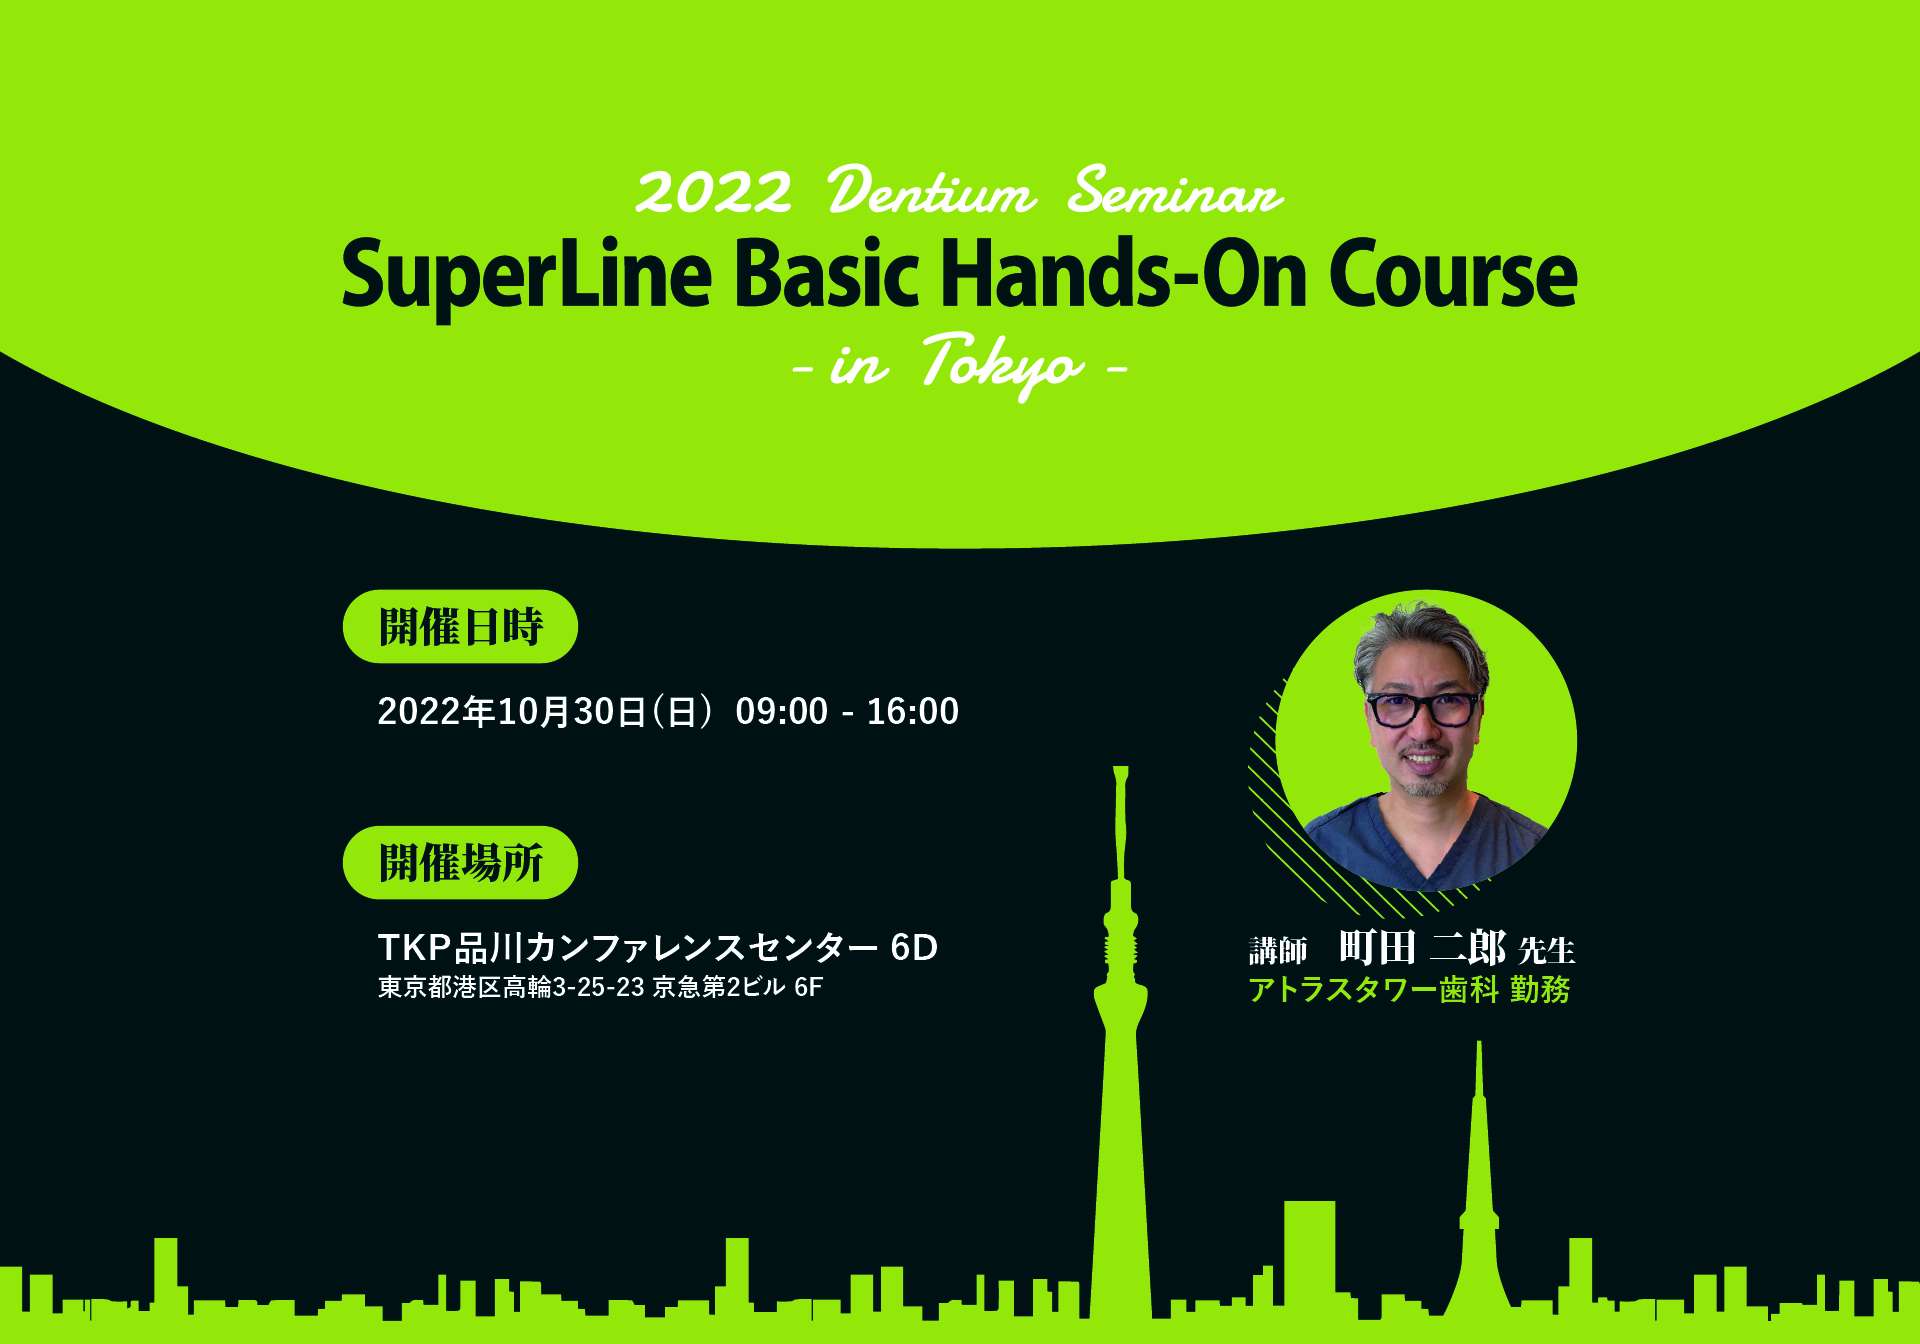 2022 Dentium Seminar SuperLine Basic Hands-On Course in Tokyo